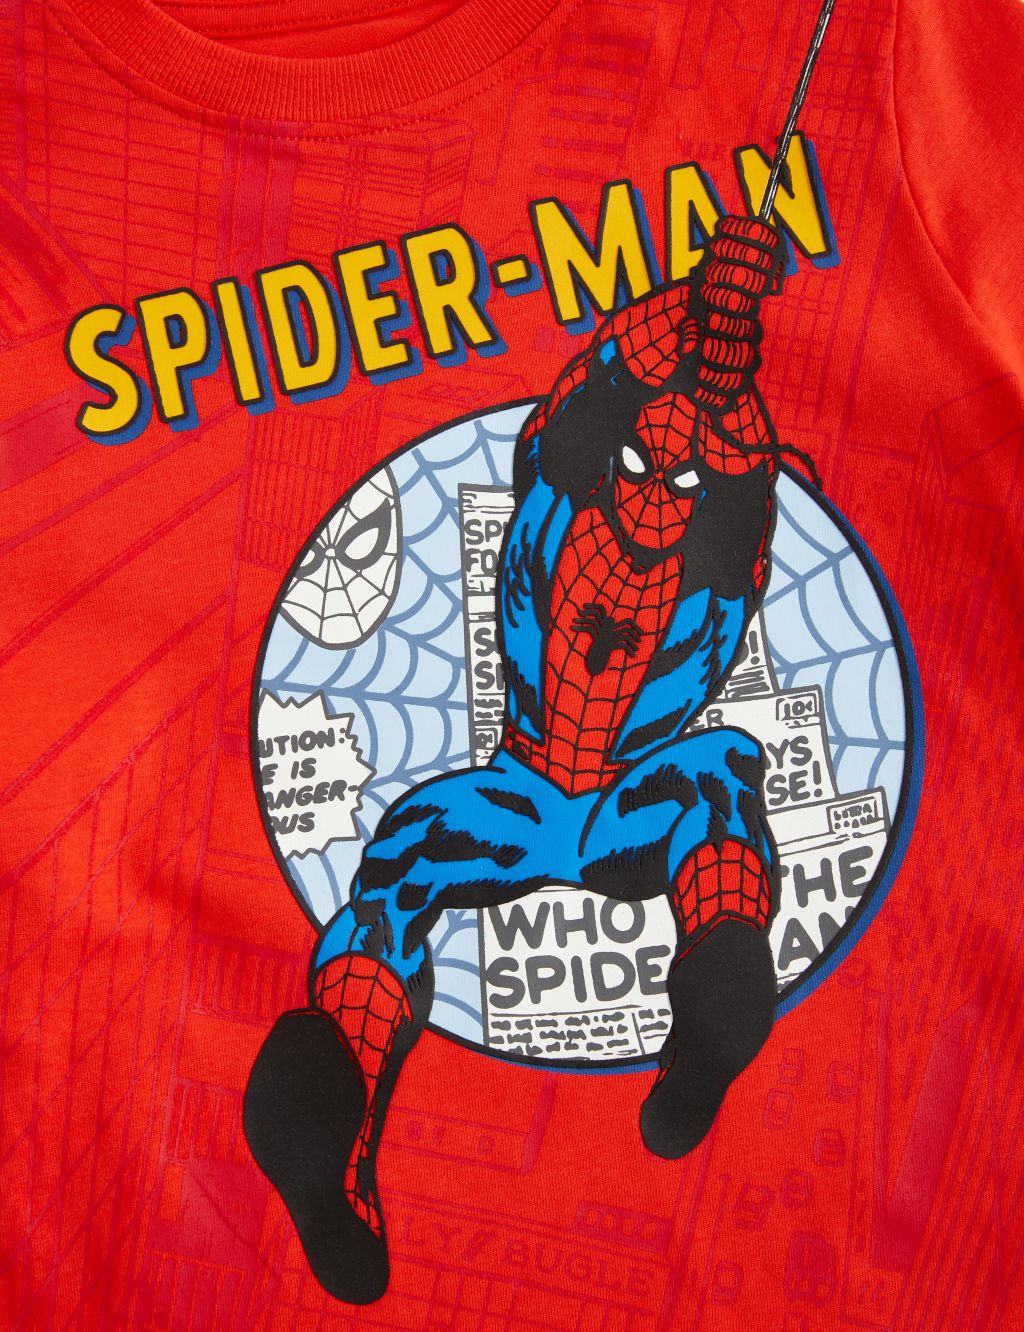 5pk Pure Cotton Spider-Man™ Briefs (2-8 Yrs)